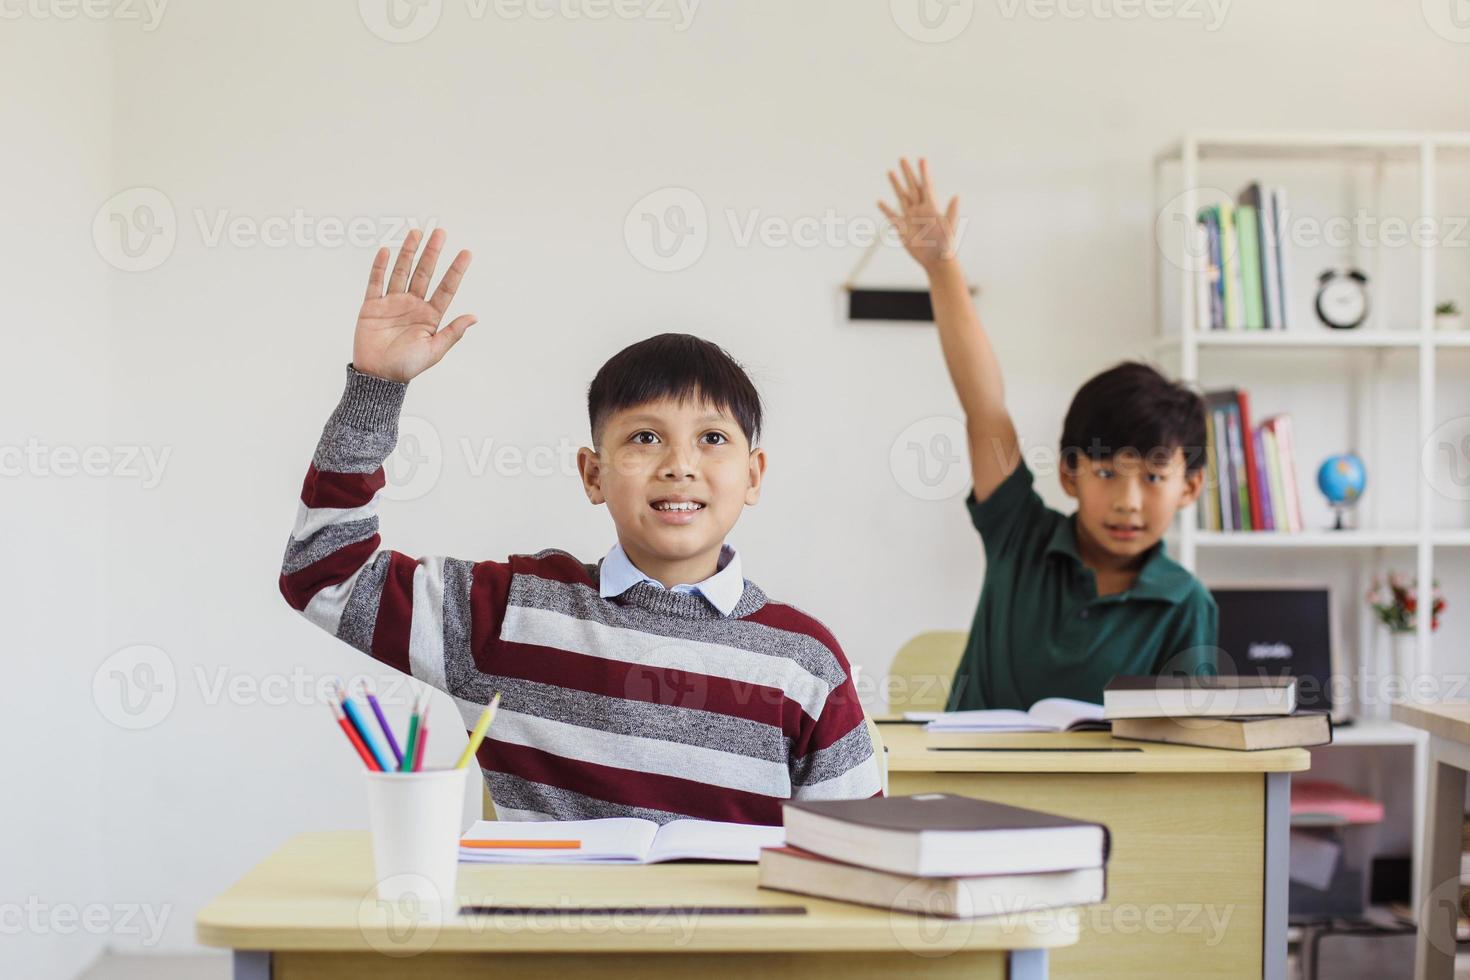 kluge asiatische grundschüler, die ihre hand in der klasse heben, um die lehrerfrage zu beantworten foto